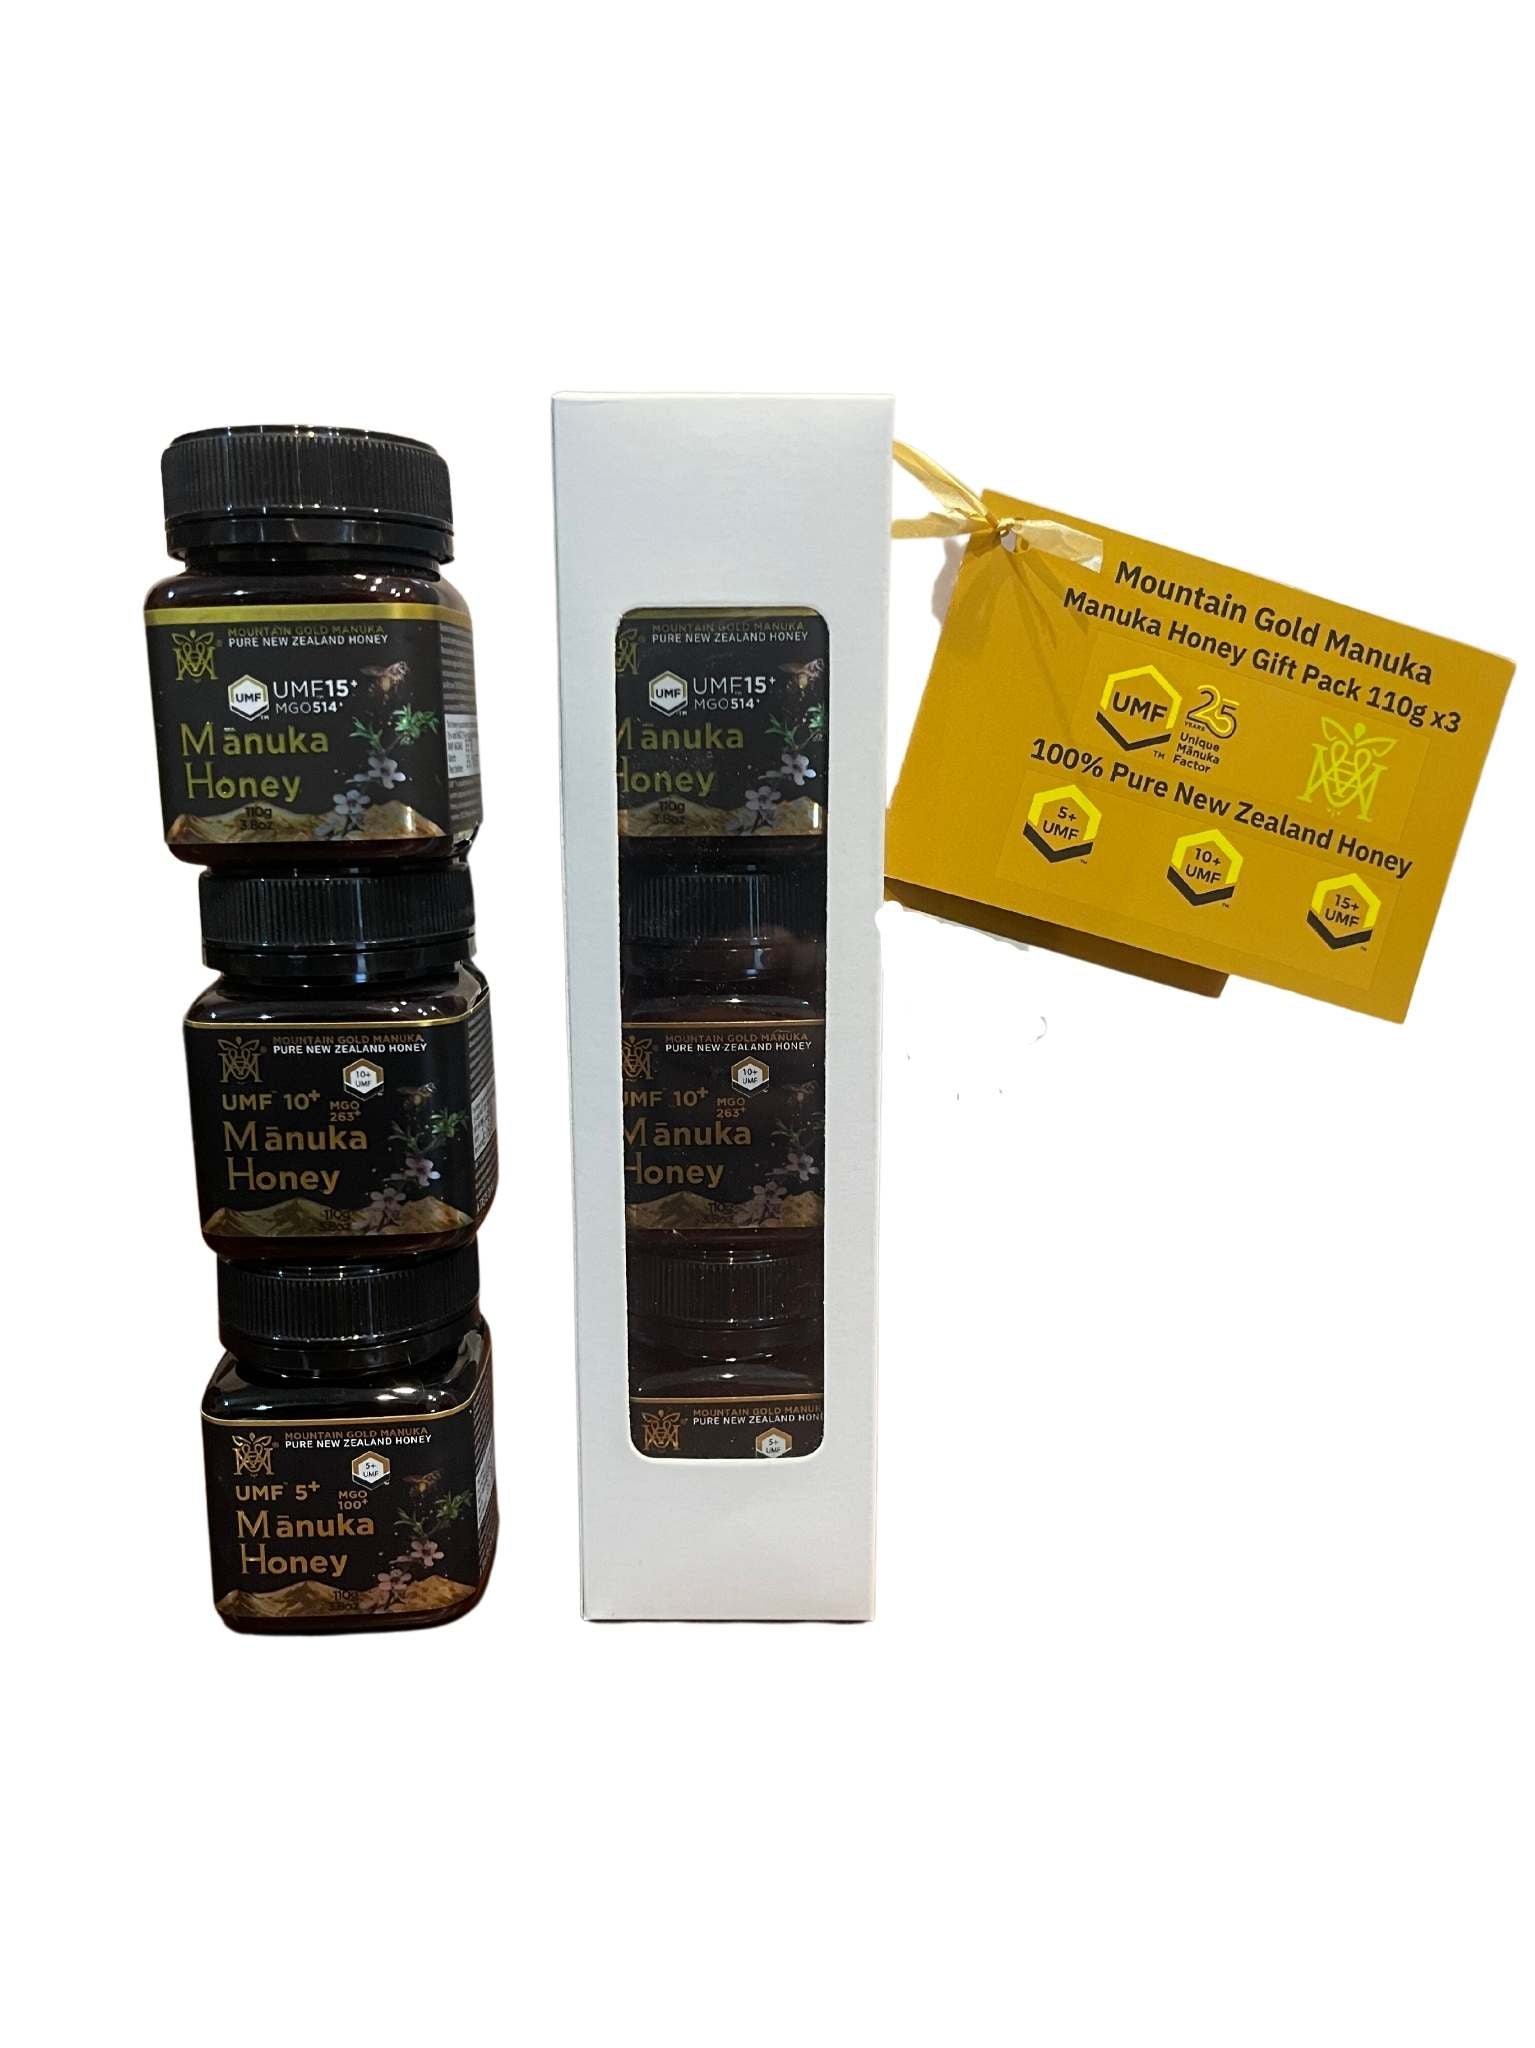 Mountain Gold UMF 5,10,15+ Manuka Honey Gift Pack